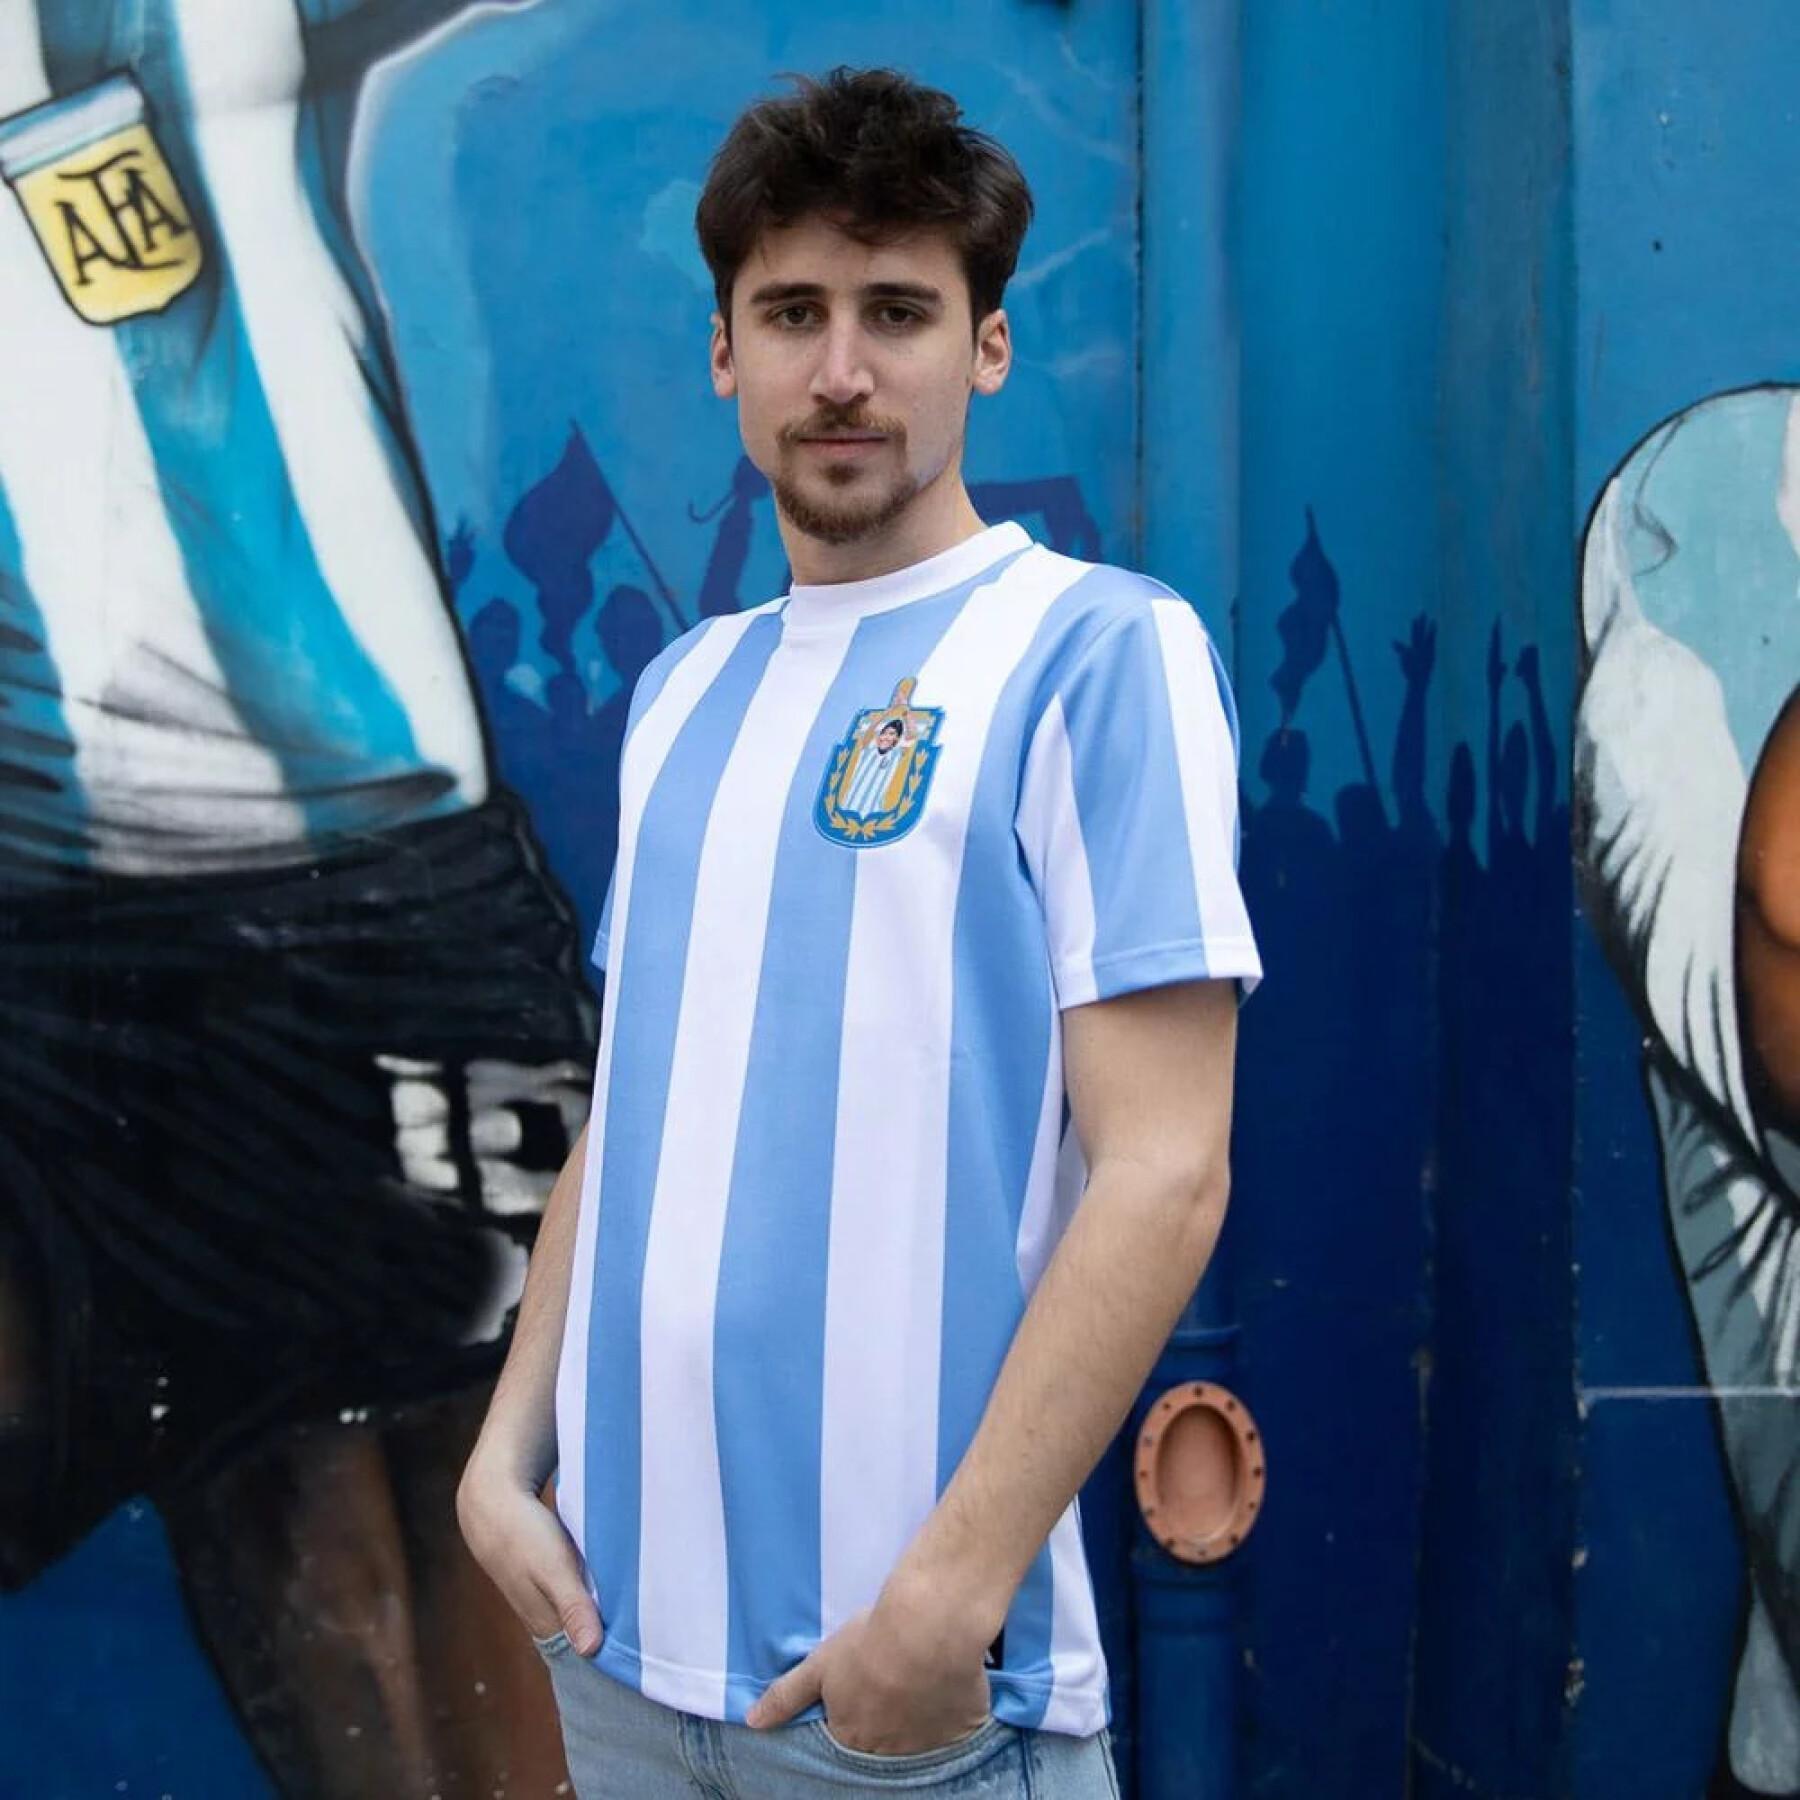 Koszulka Copa Football Maradona Argentina 1986 Retro